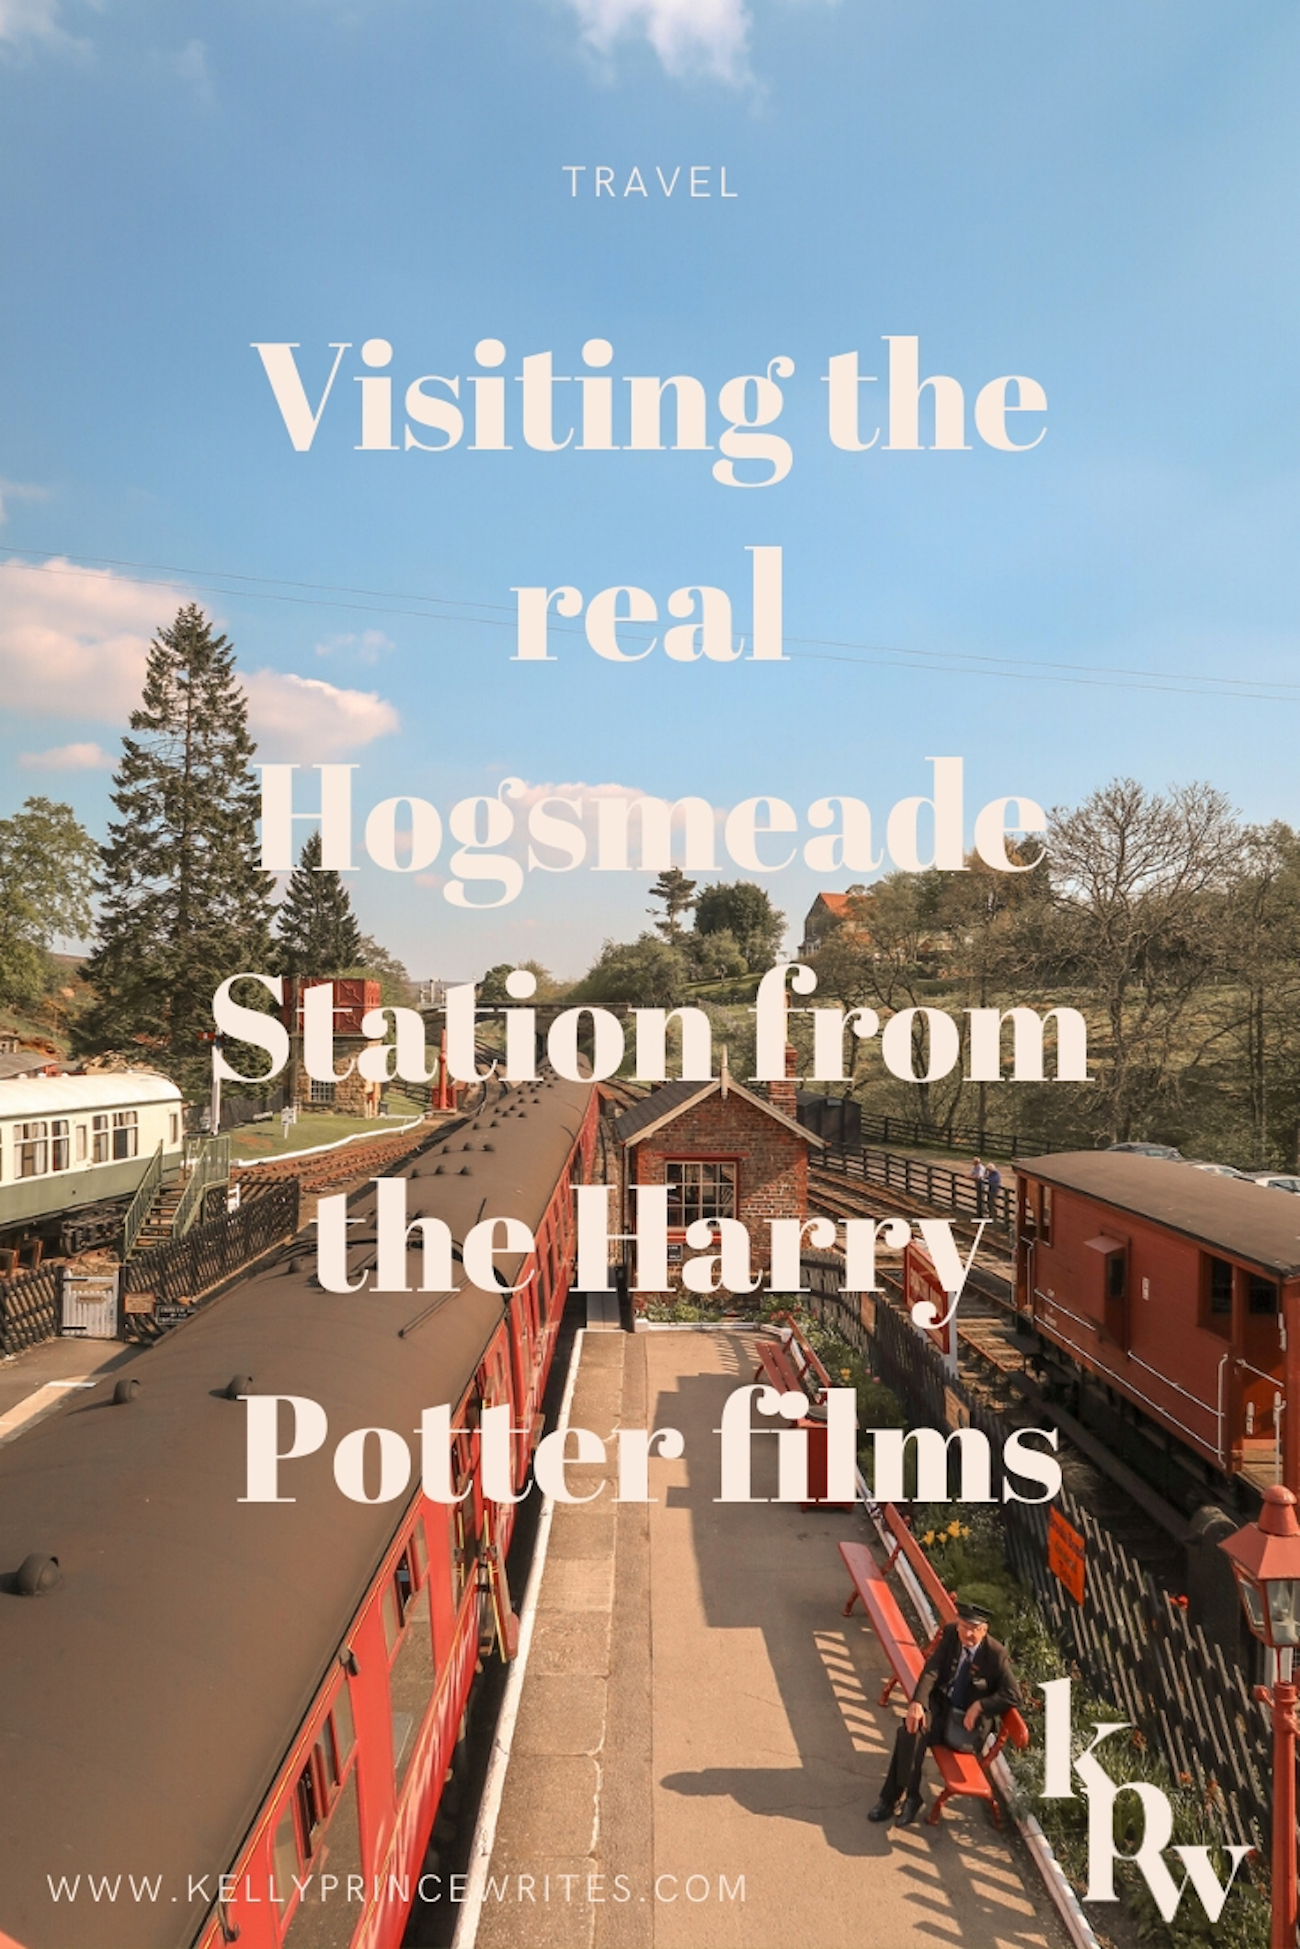 hogsmeade station